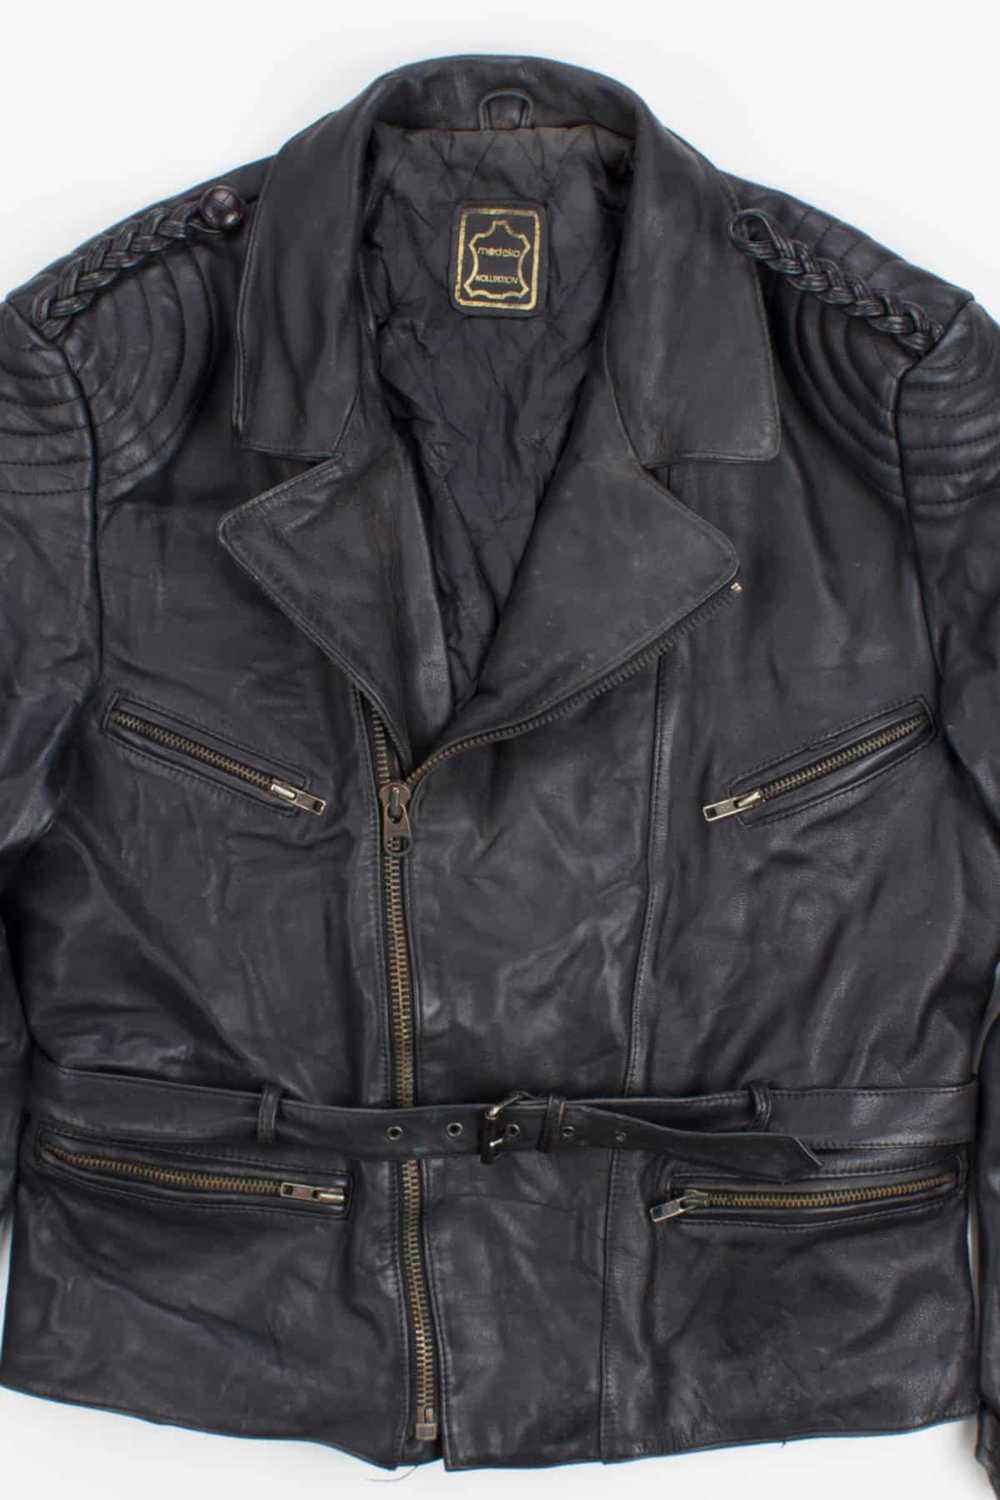 Vintage Motorcycle Jacket 175 - image 2